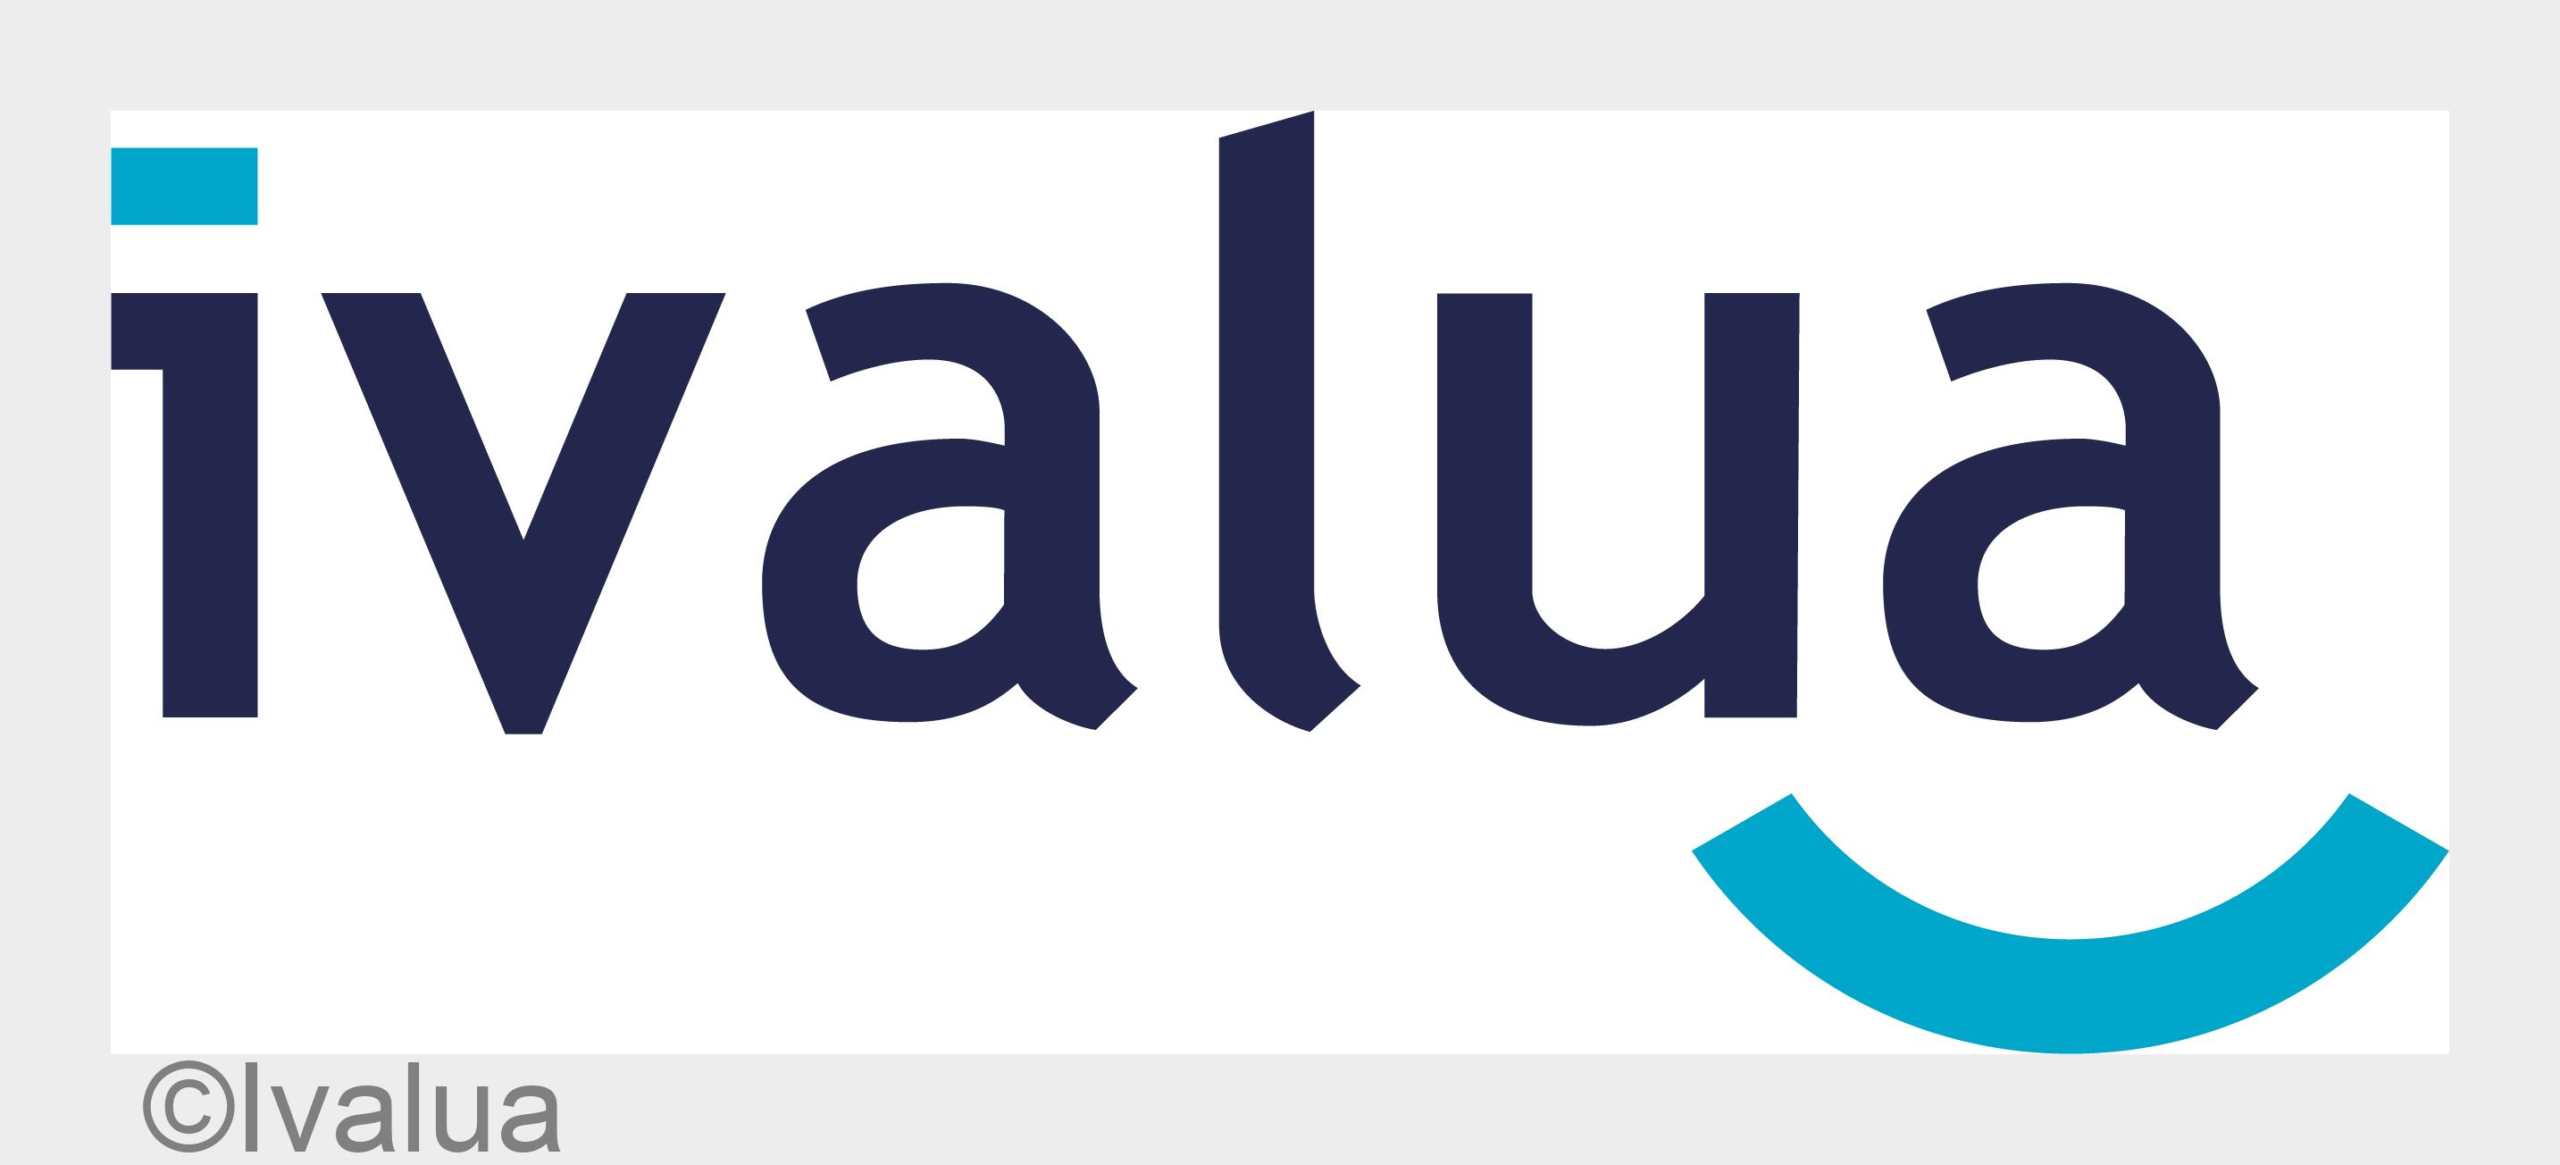 Ivalua ist zum vierten Mal in Folge Leader im Gartner® Magic Quadranten™ für Procure-to-Pay-Suites